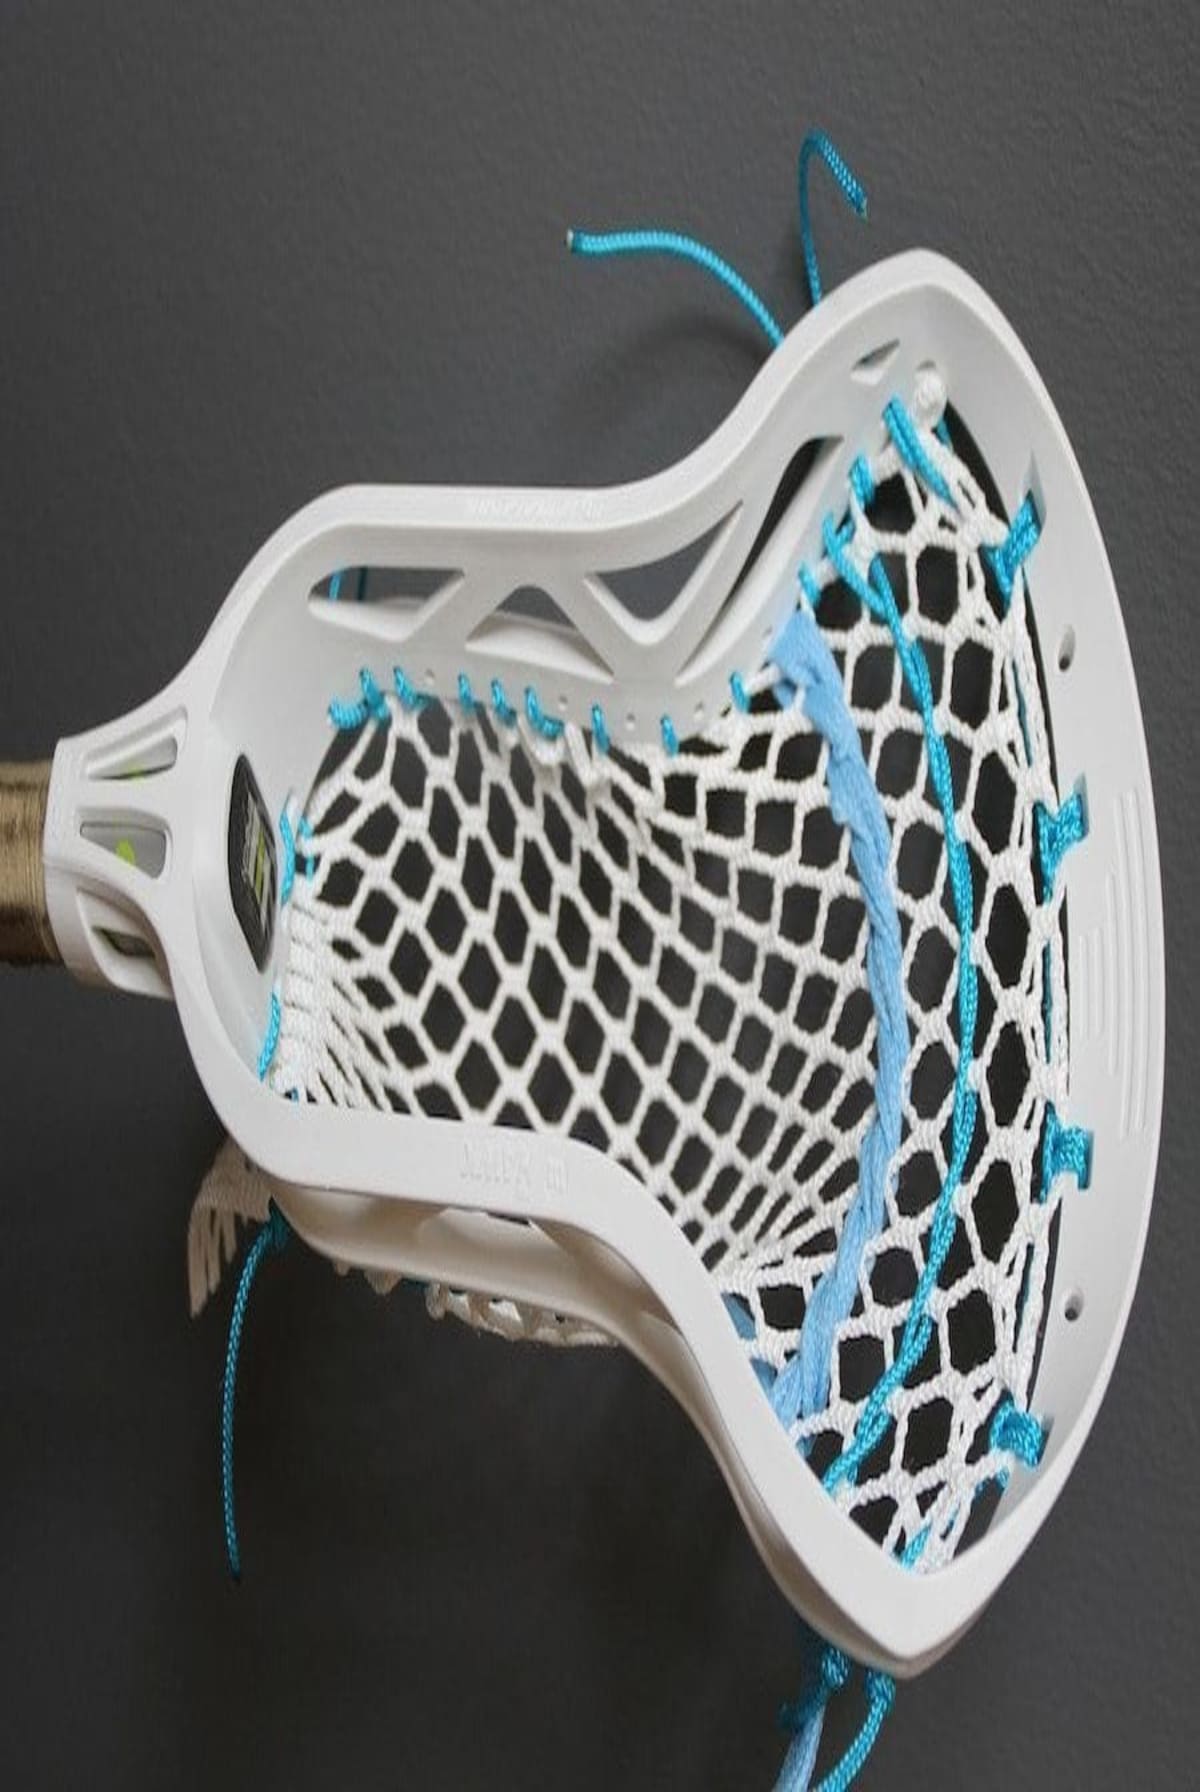 3D Purpose Women's Mesh - Epoch Lacrosse